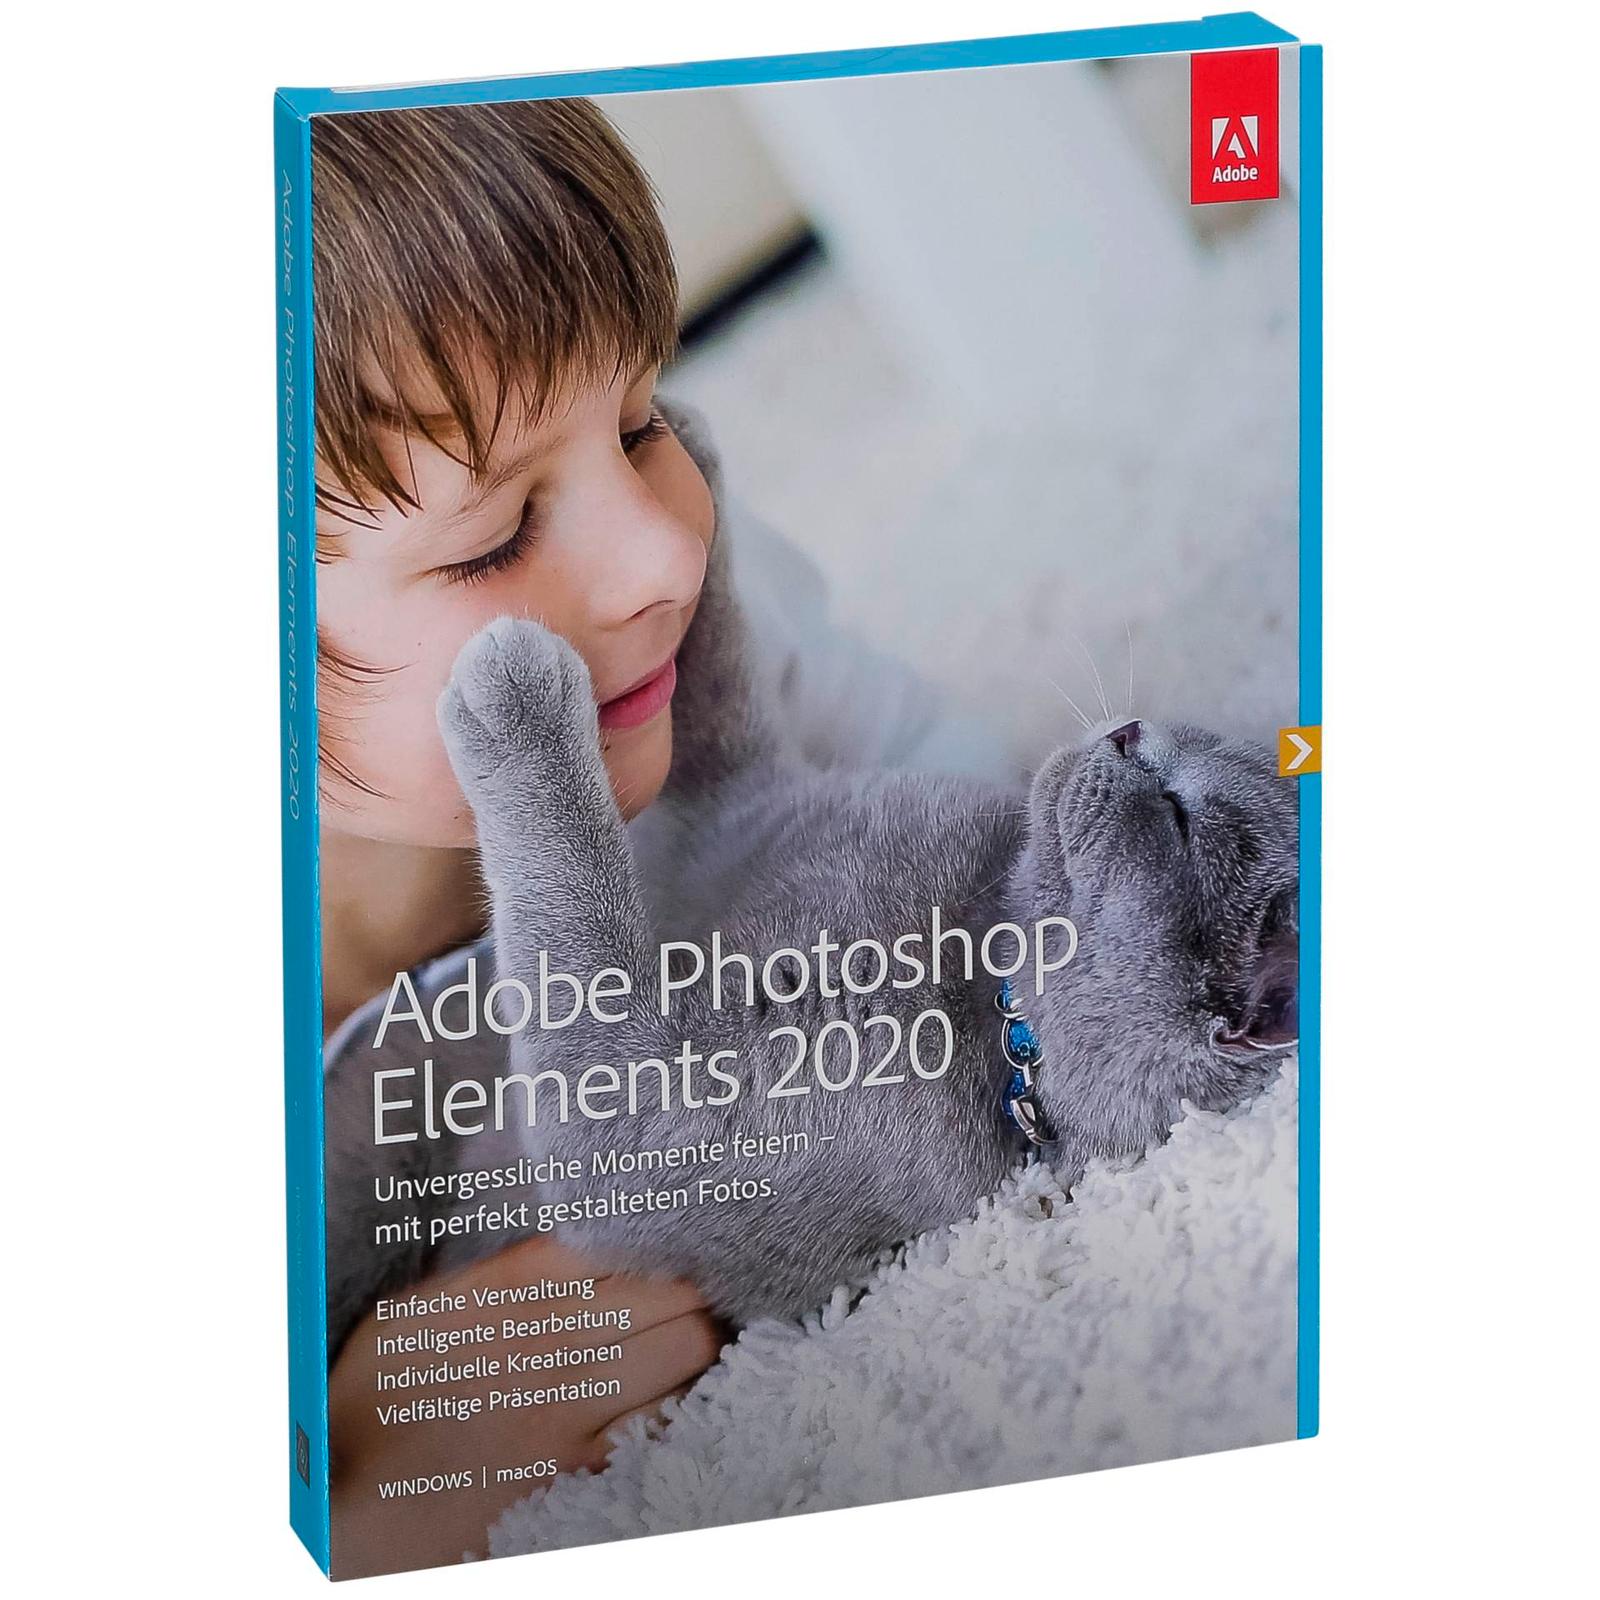 adobe photoshop elements 2020 price